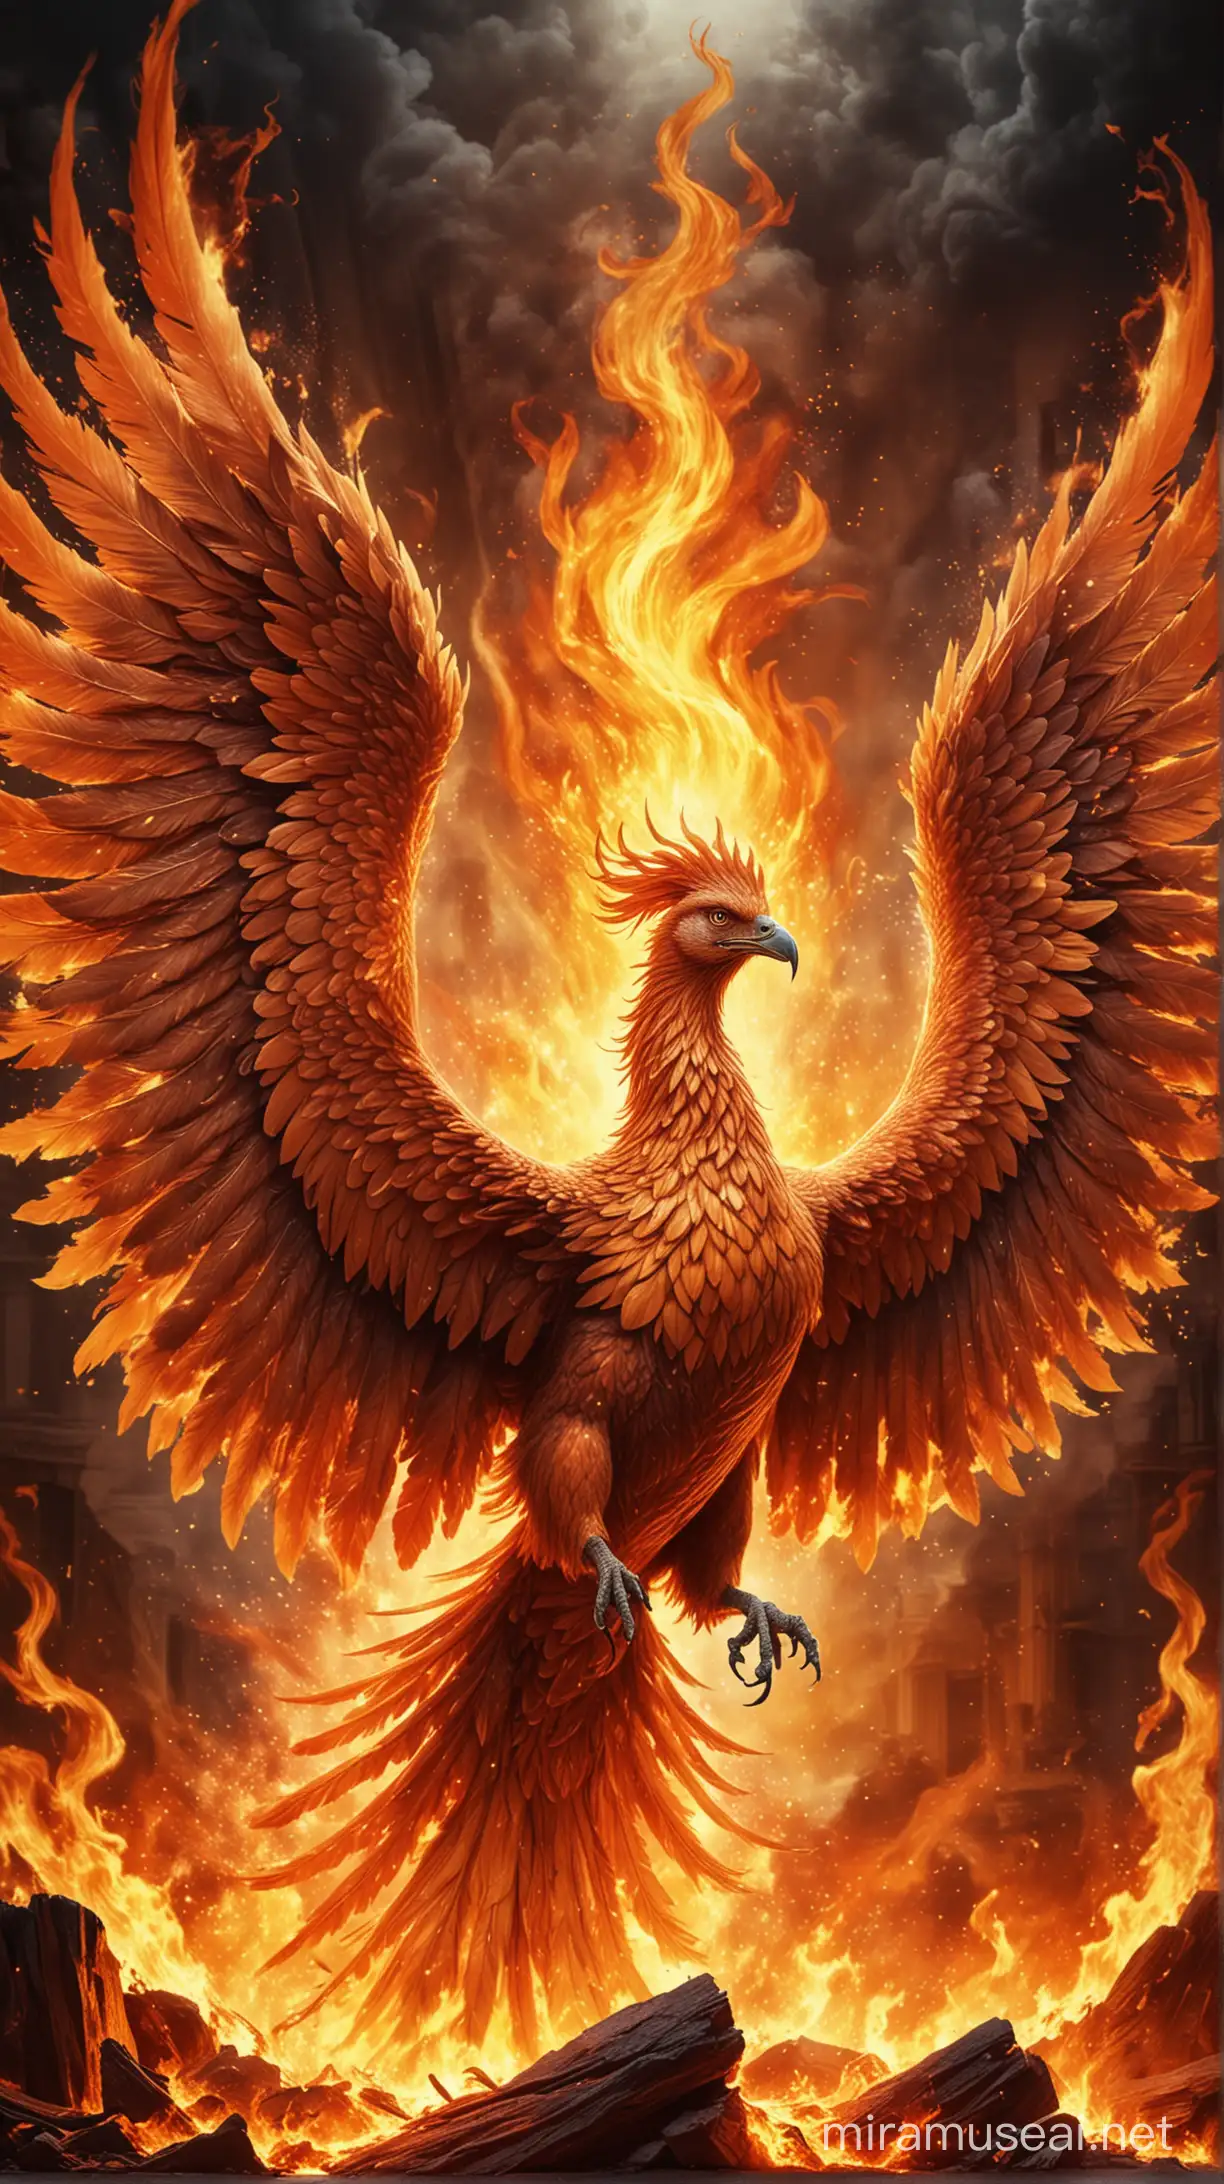 Majestic Phoenix Soaring Above Fiery Flames